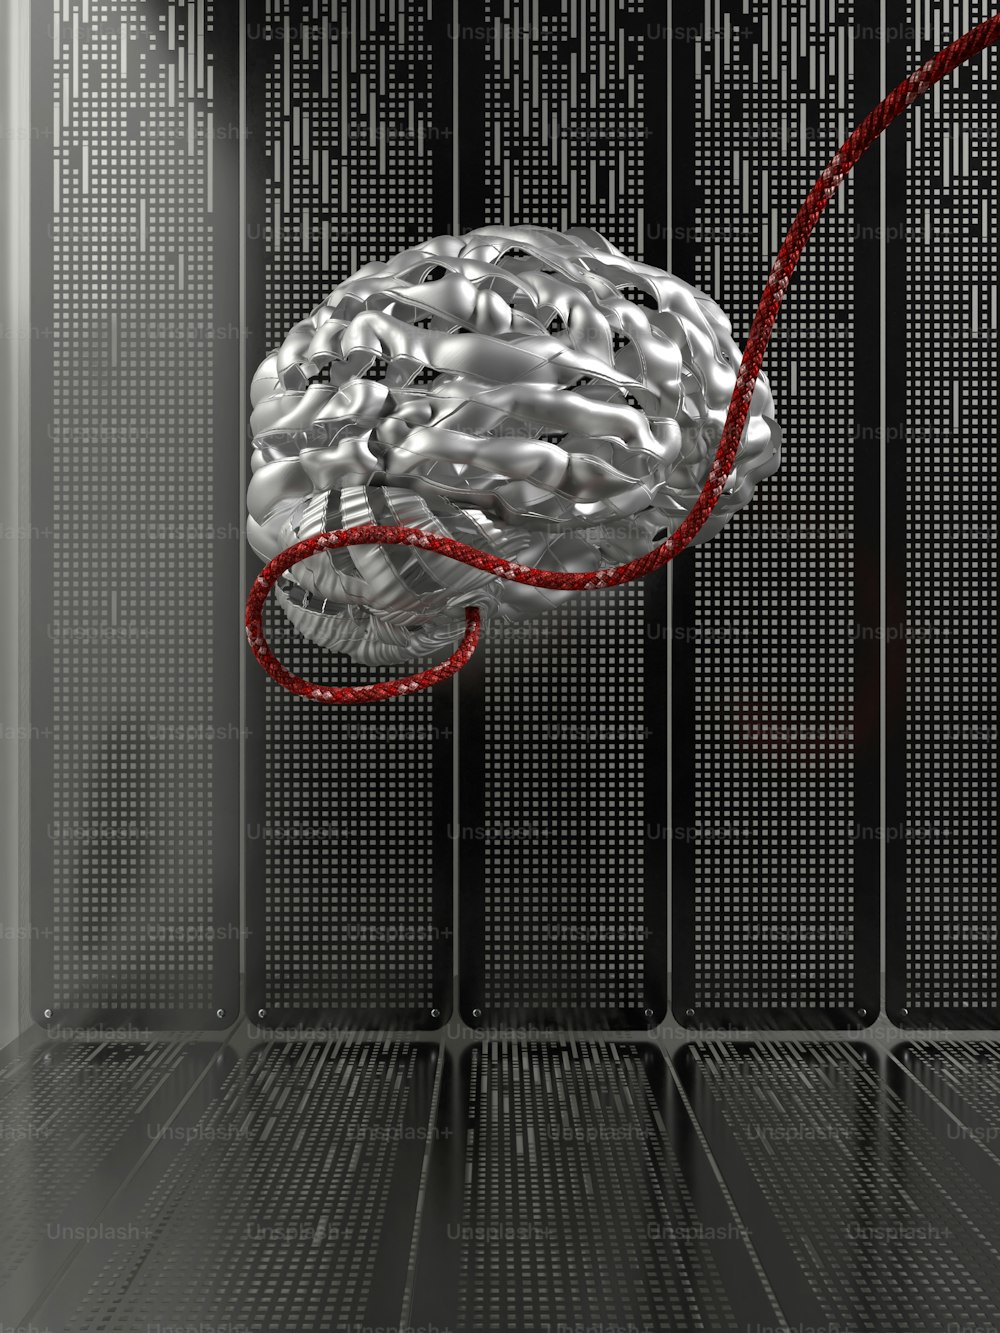 un cerveau dans une salle de serveurs avec un cordon rouge connecté à celui-ci